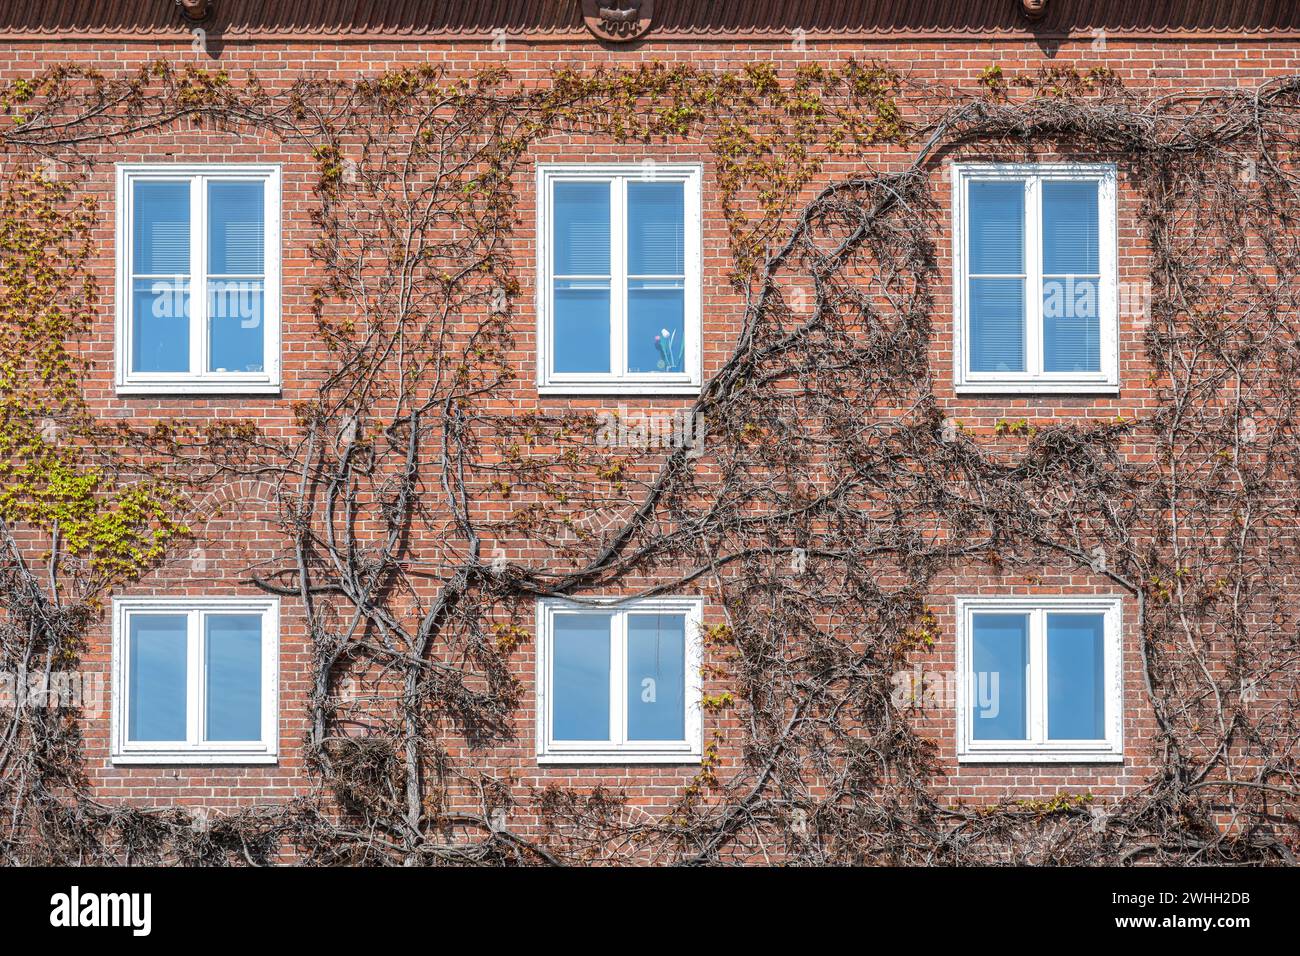 Façade de maison construite en briques rouges avec des fenêtres blanches, envahie de vigne sauvage avec les premières feuilles au printemps, mur Banque D'Images